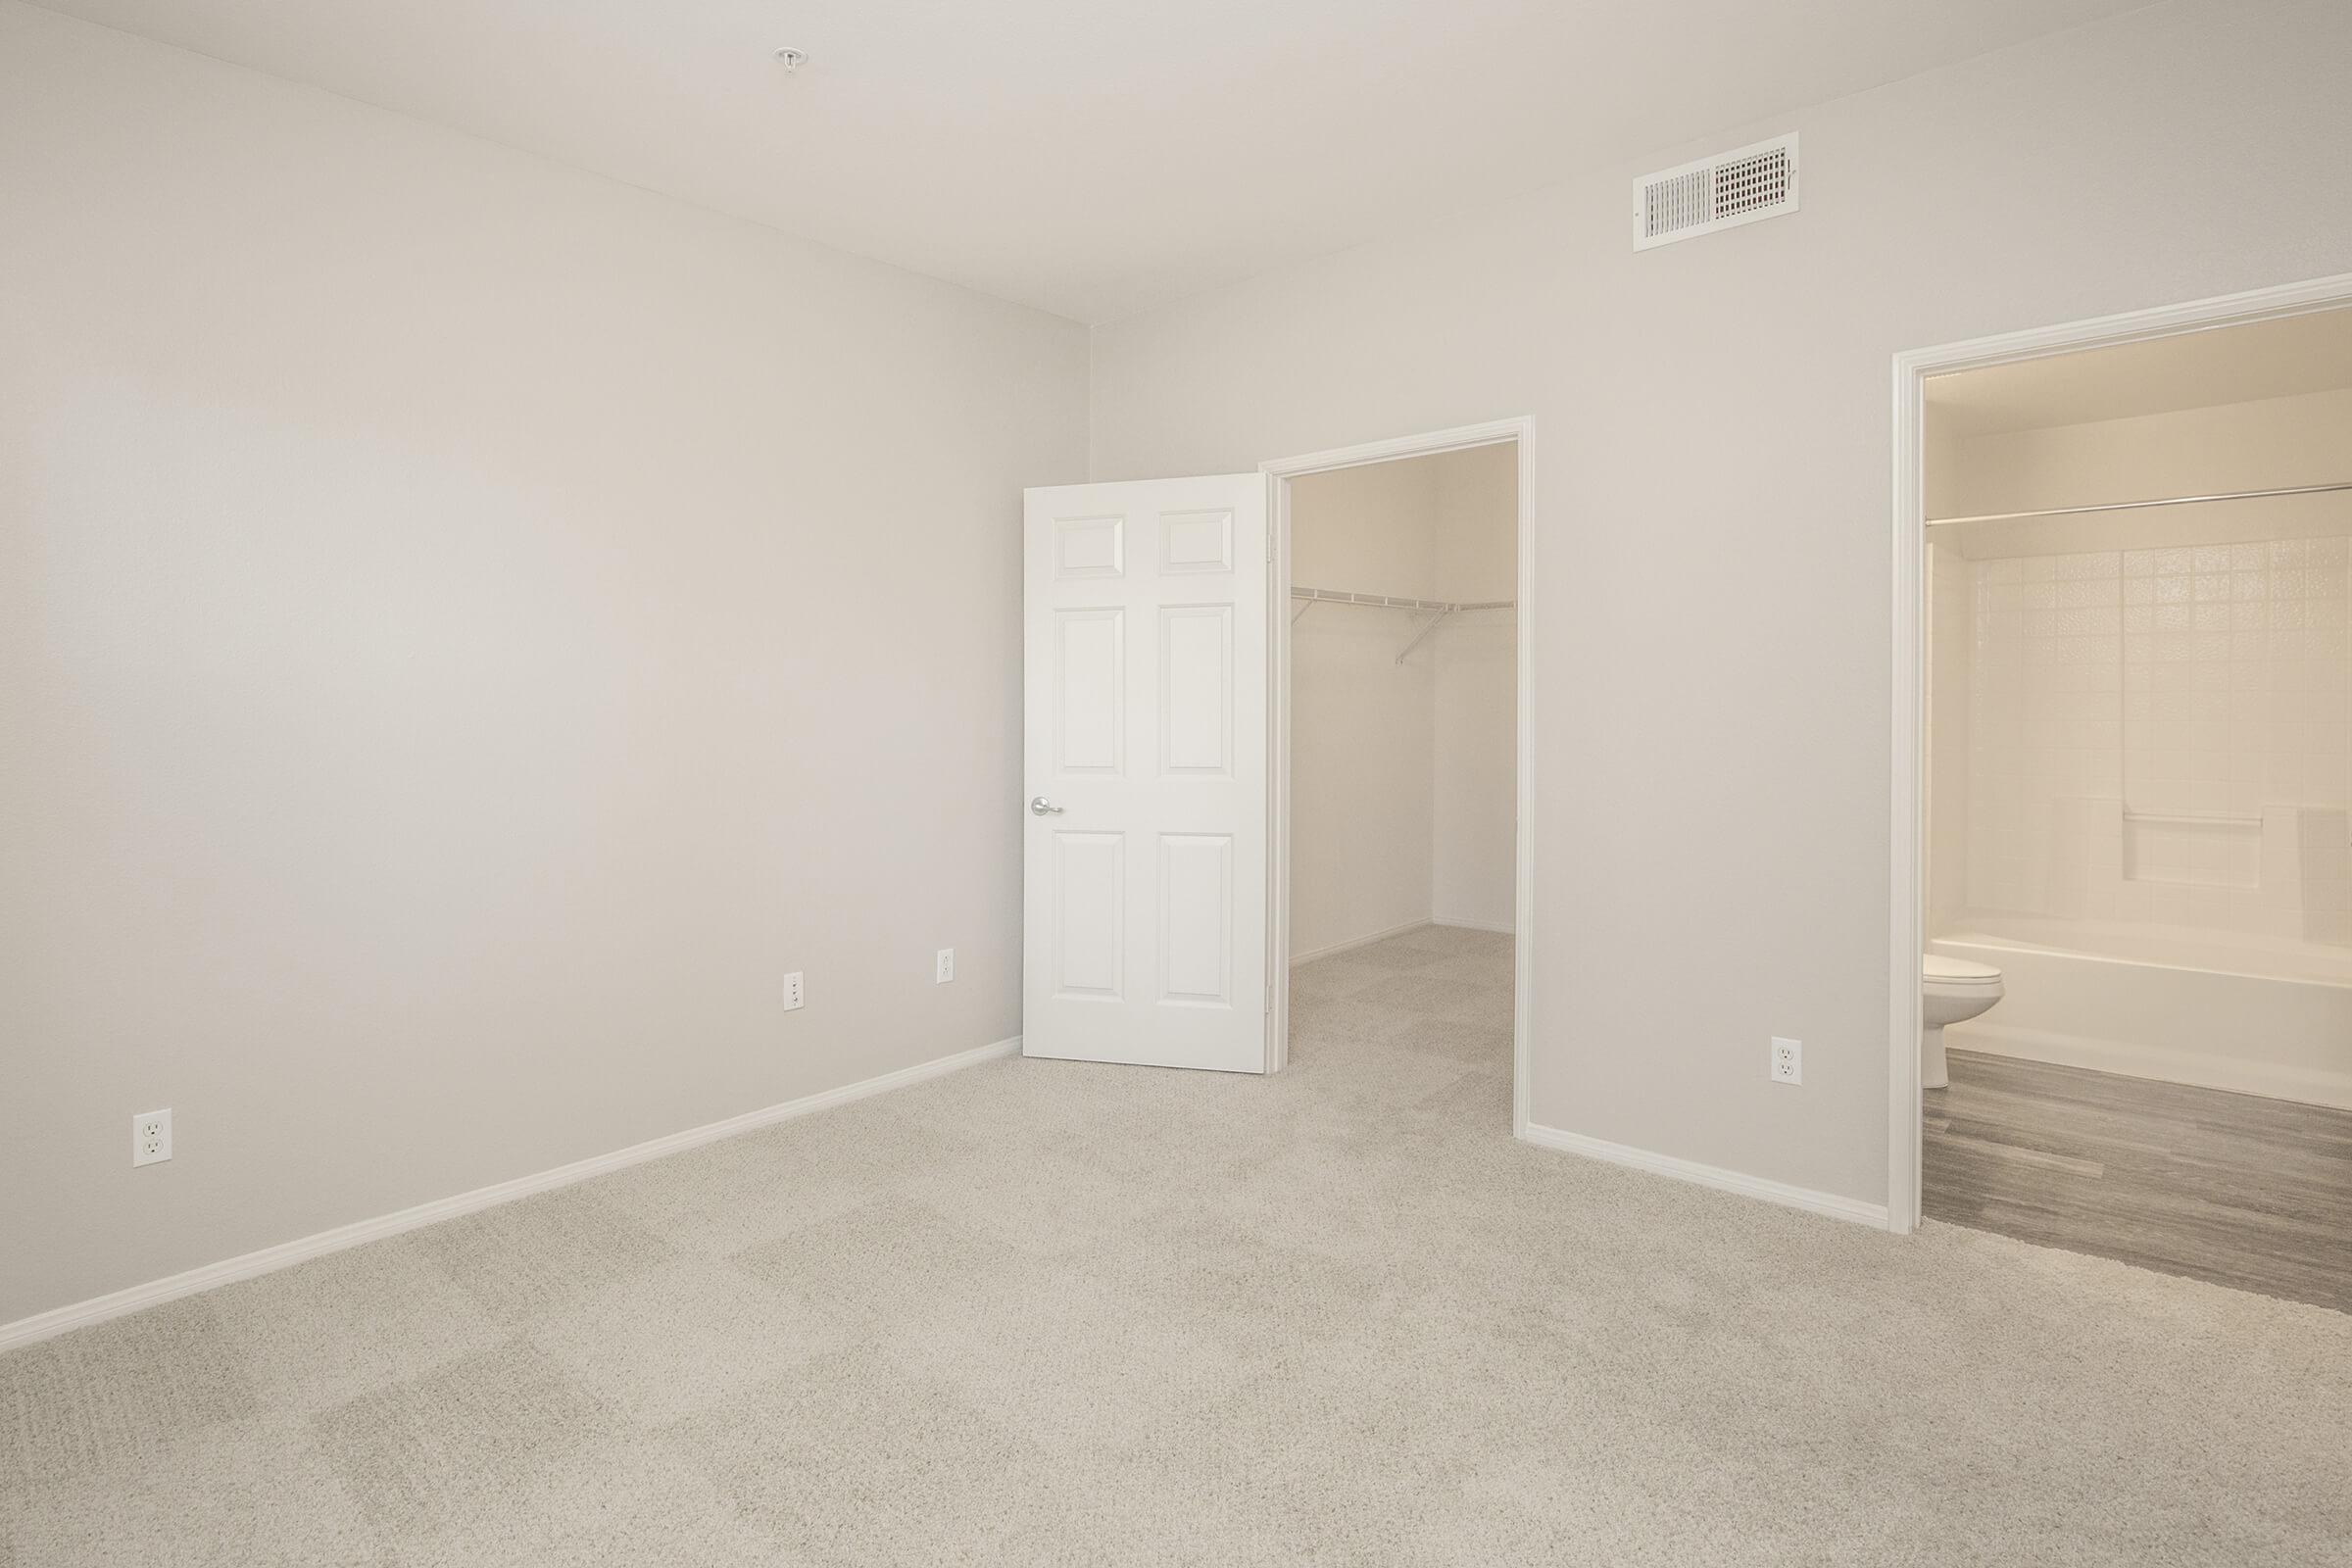 Carpeted bedroom with open walk-in closet and bathroom doors